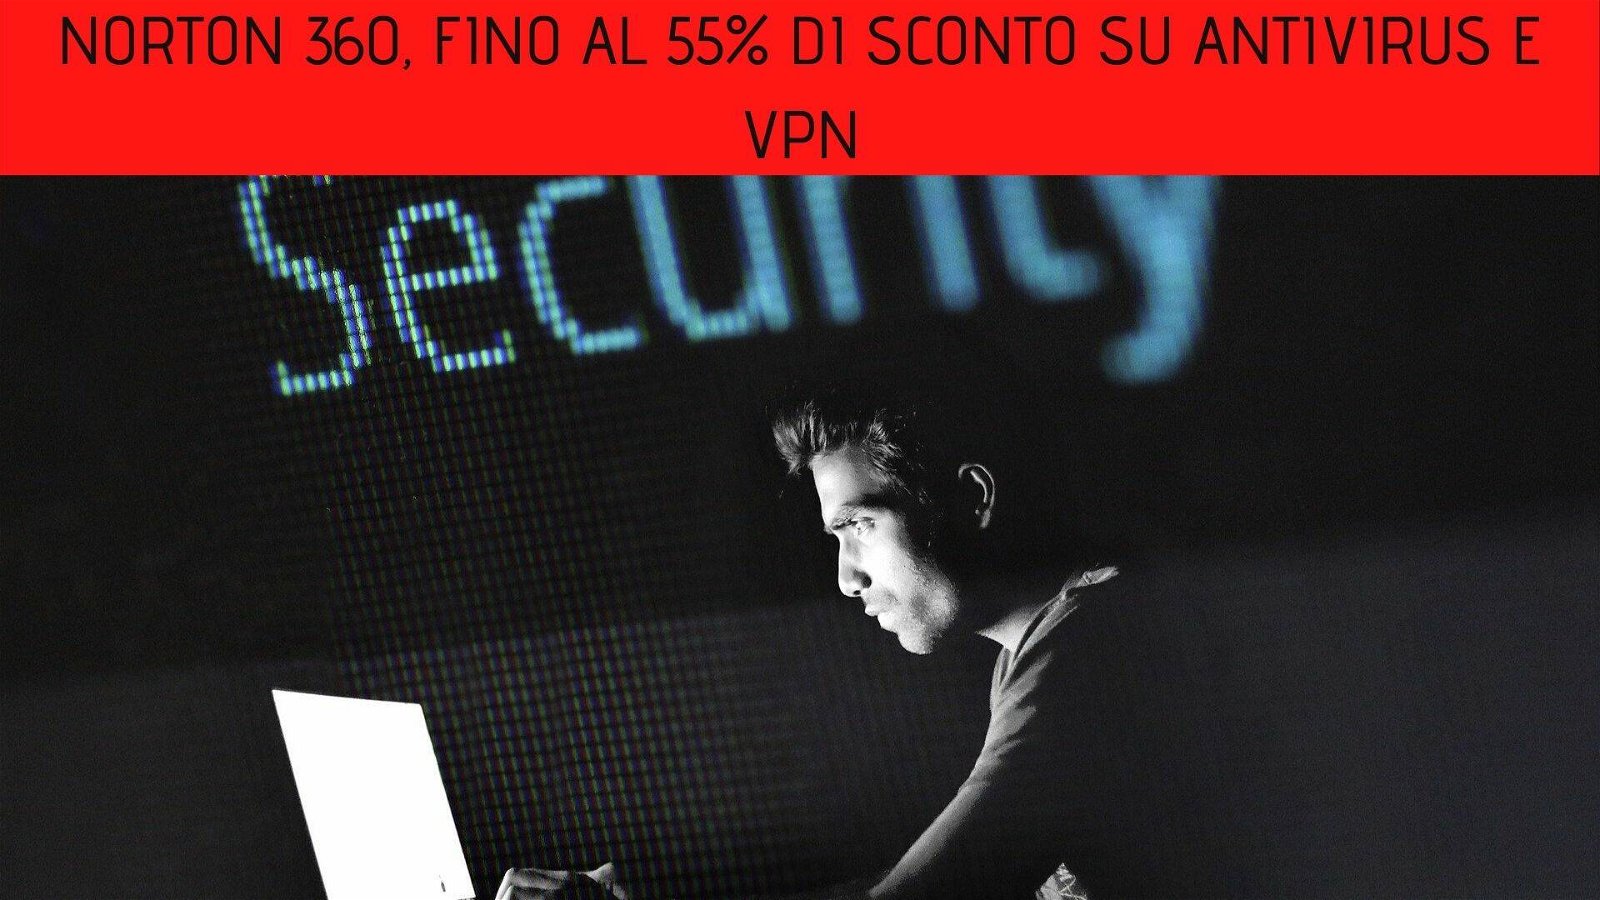 Immagine di Norton 360, fino al 55% di sconto su antivirus e VPN